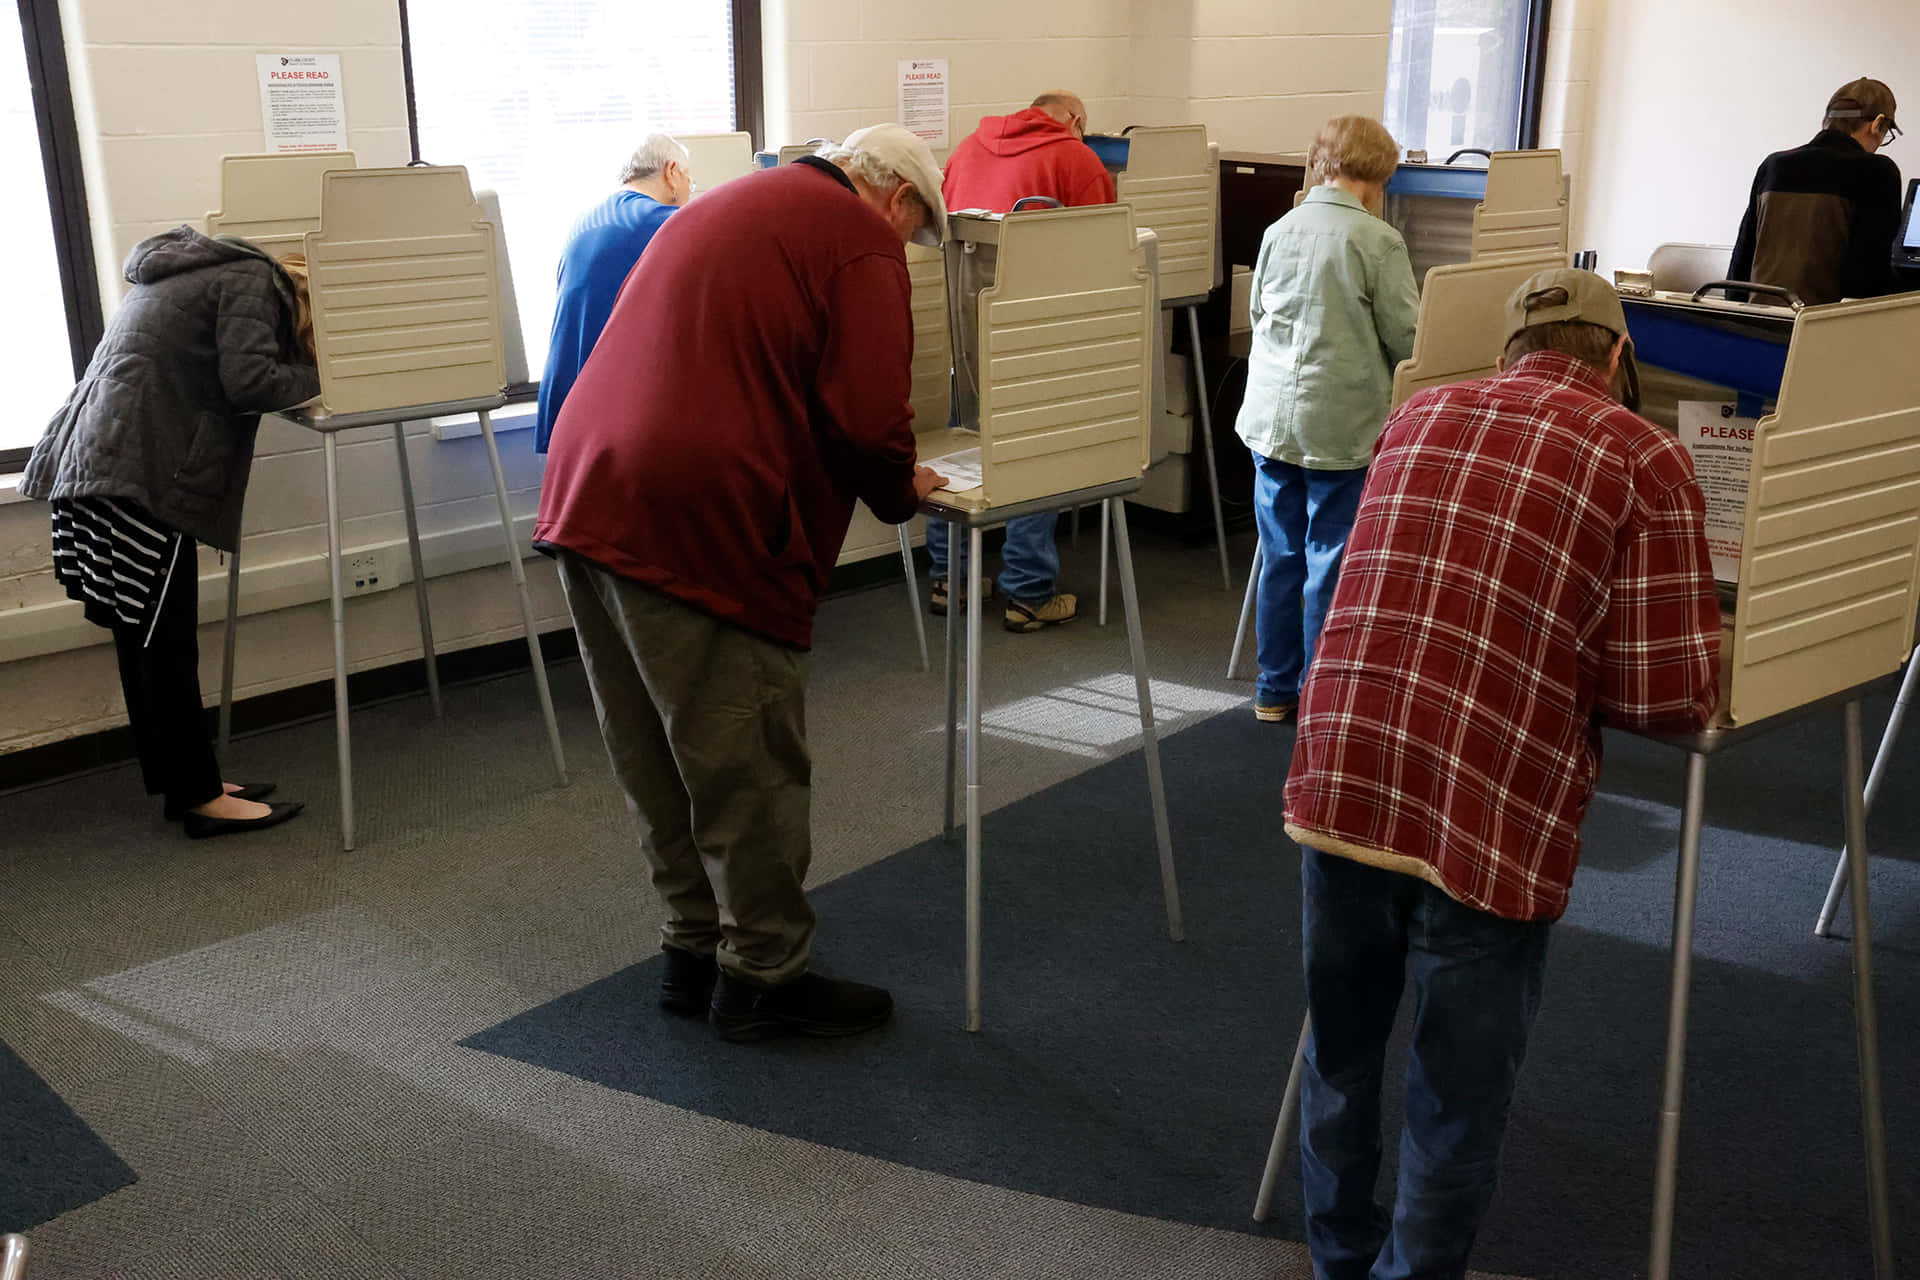 Personasvotando En Una Sala Con Cabinas De Votación